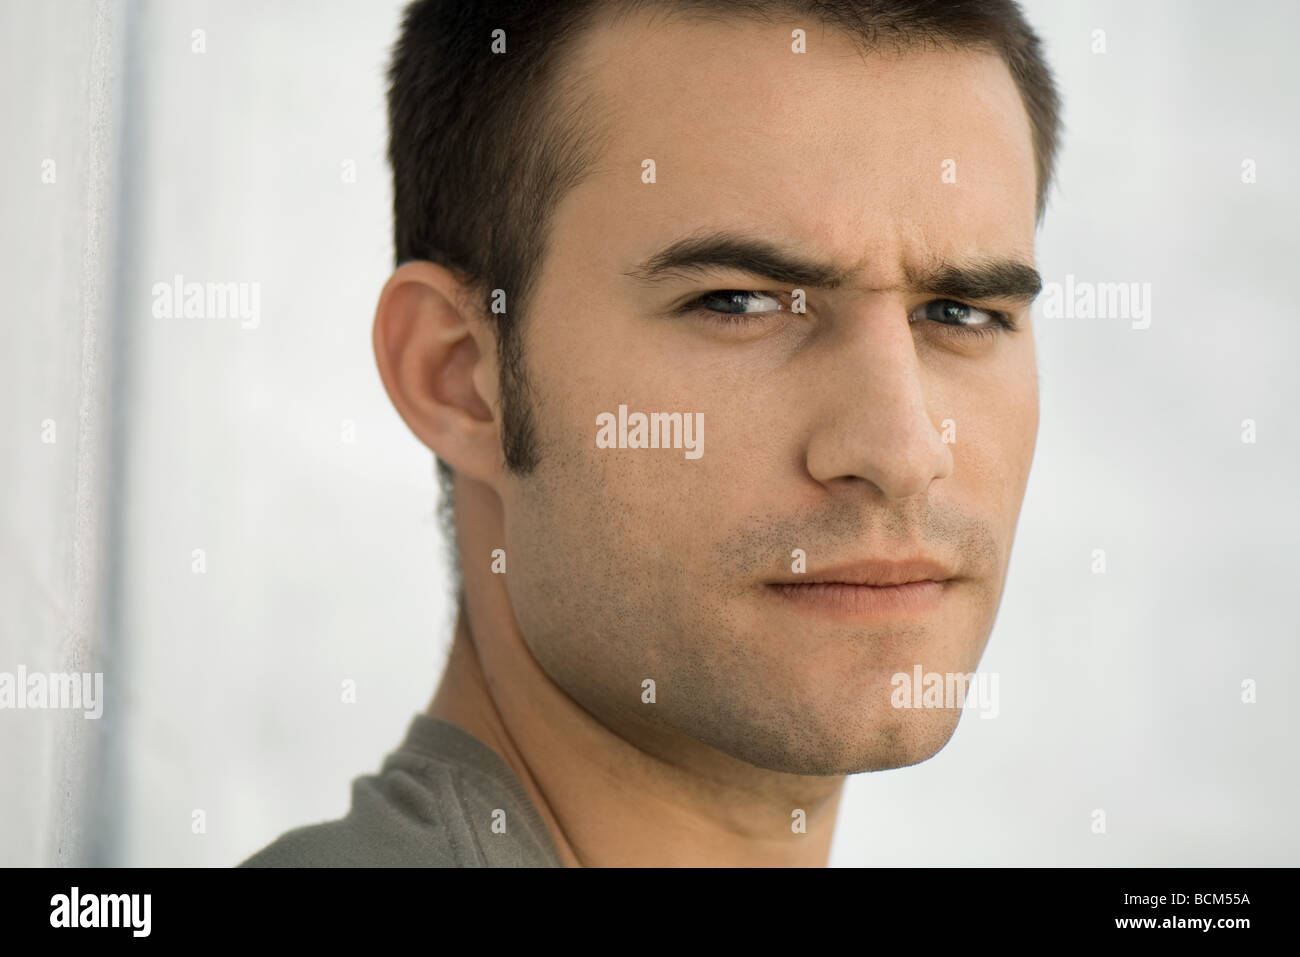 Man frowning at camera, raising one eyebrow Stock Photo